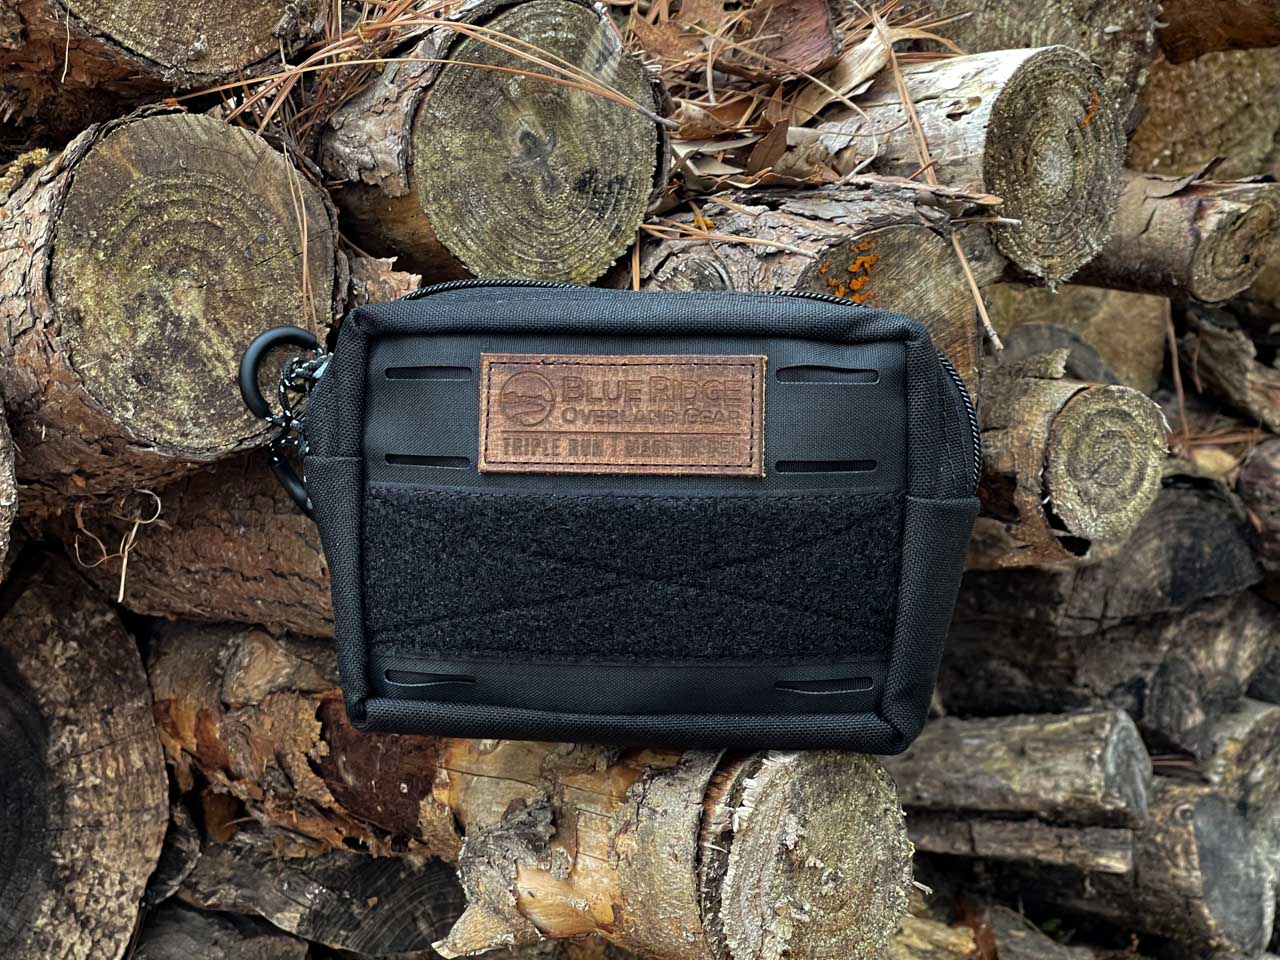 Blue Ridge Overland Gear Bum Bag • Best Compact EDC Bag!